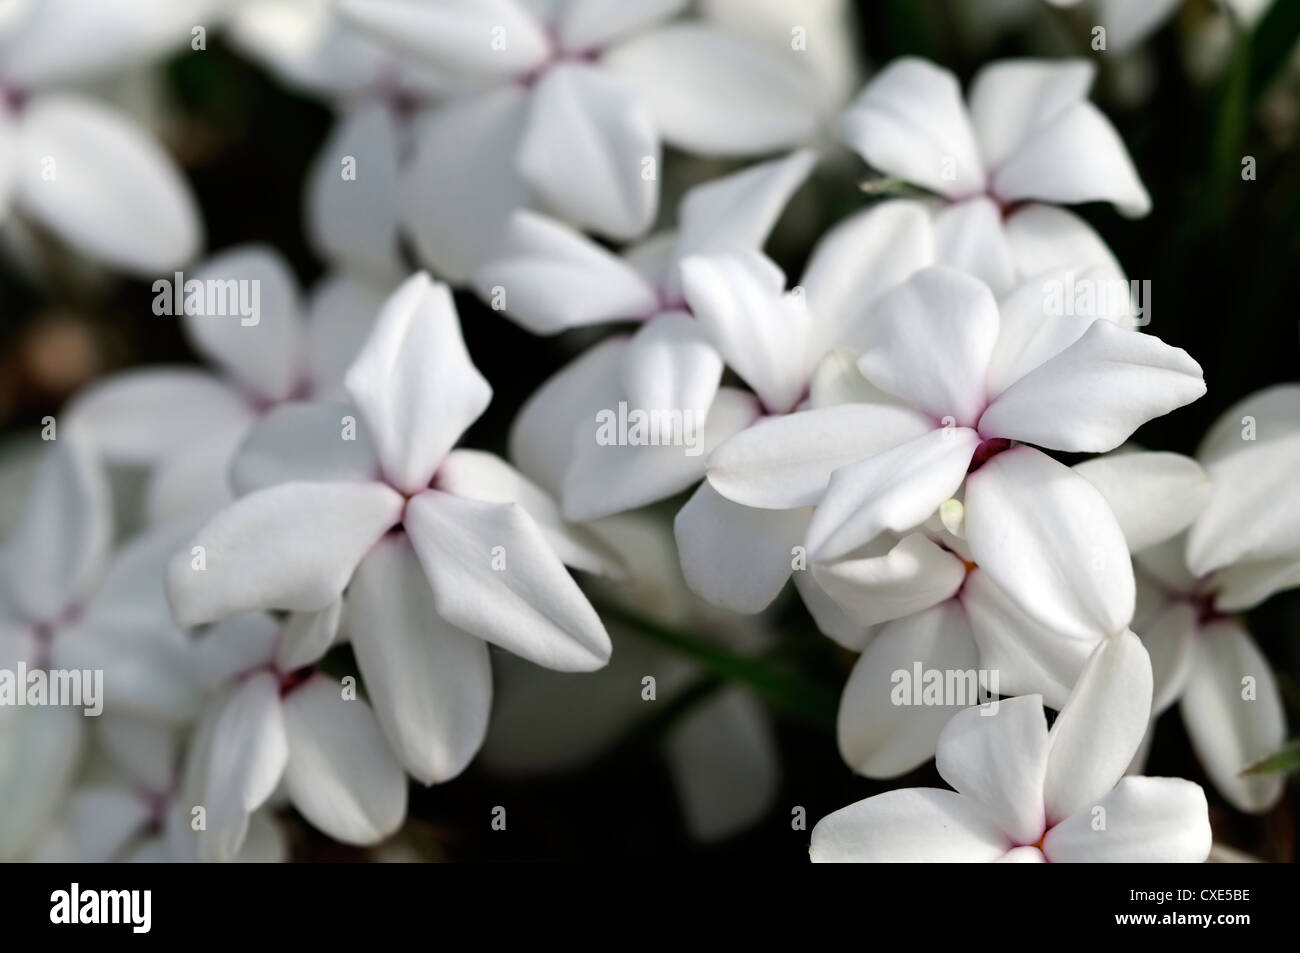 Rhodohypoxis helen vivace blanche fleur alpine fleur closeup macro close up detail Banque D'Images